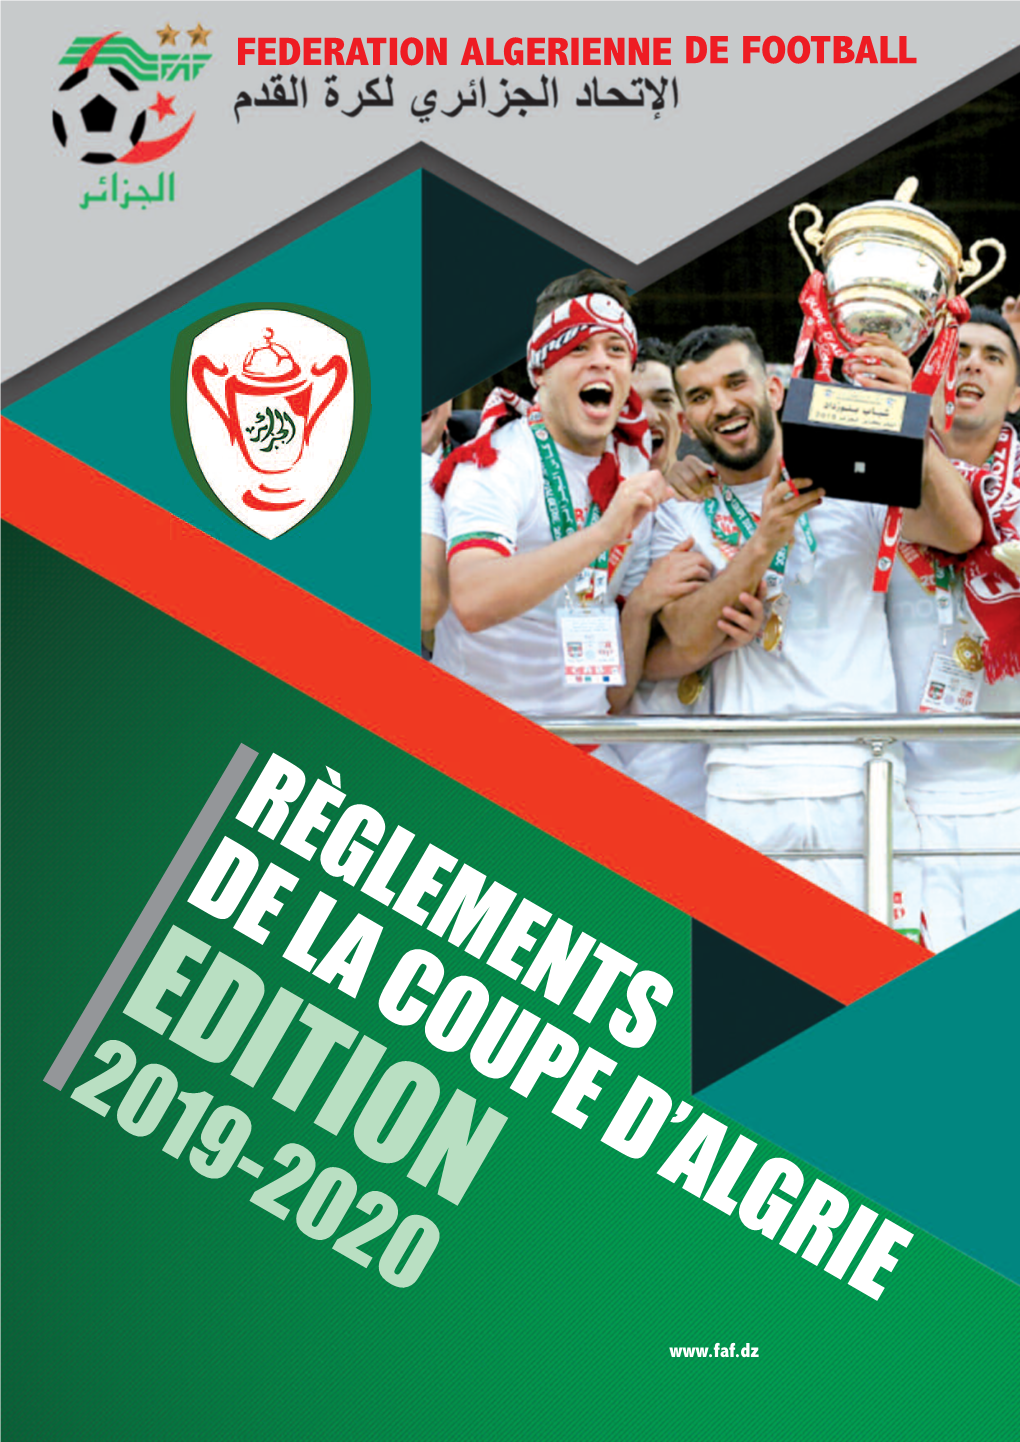 Reglement Coupe D'algérie 2019